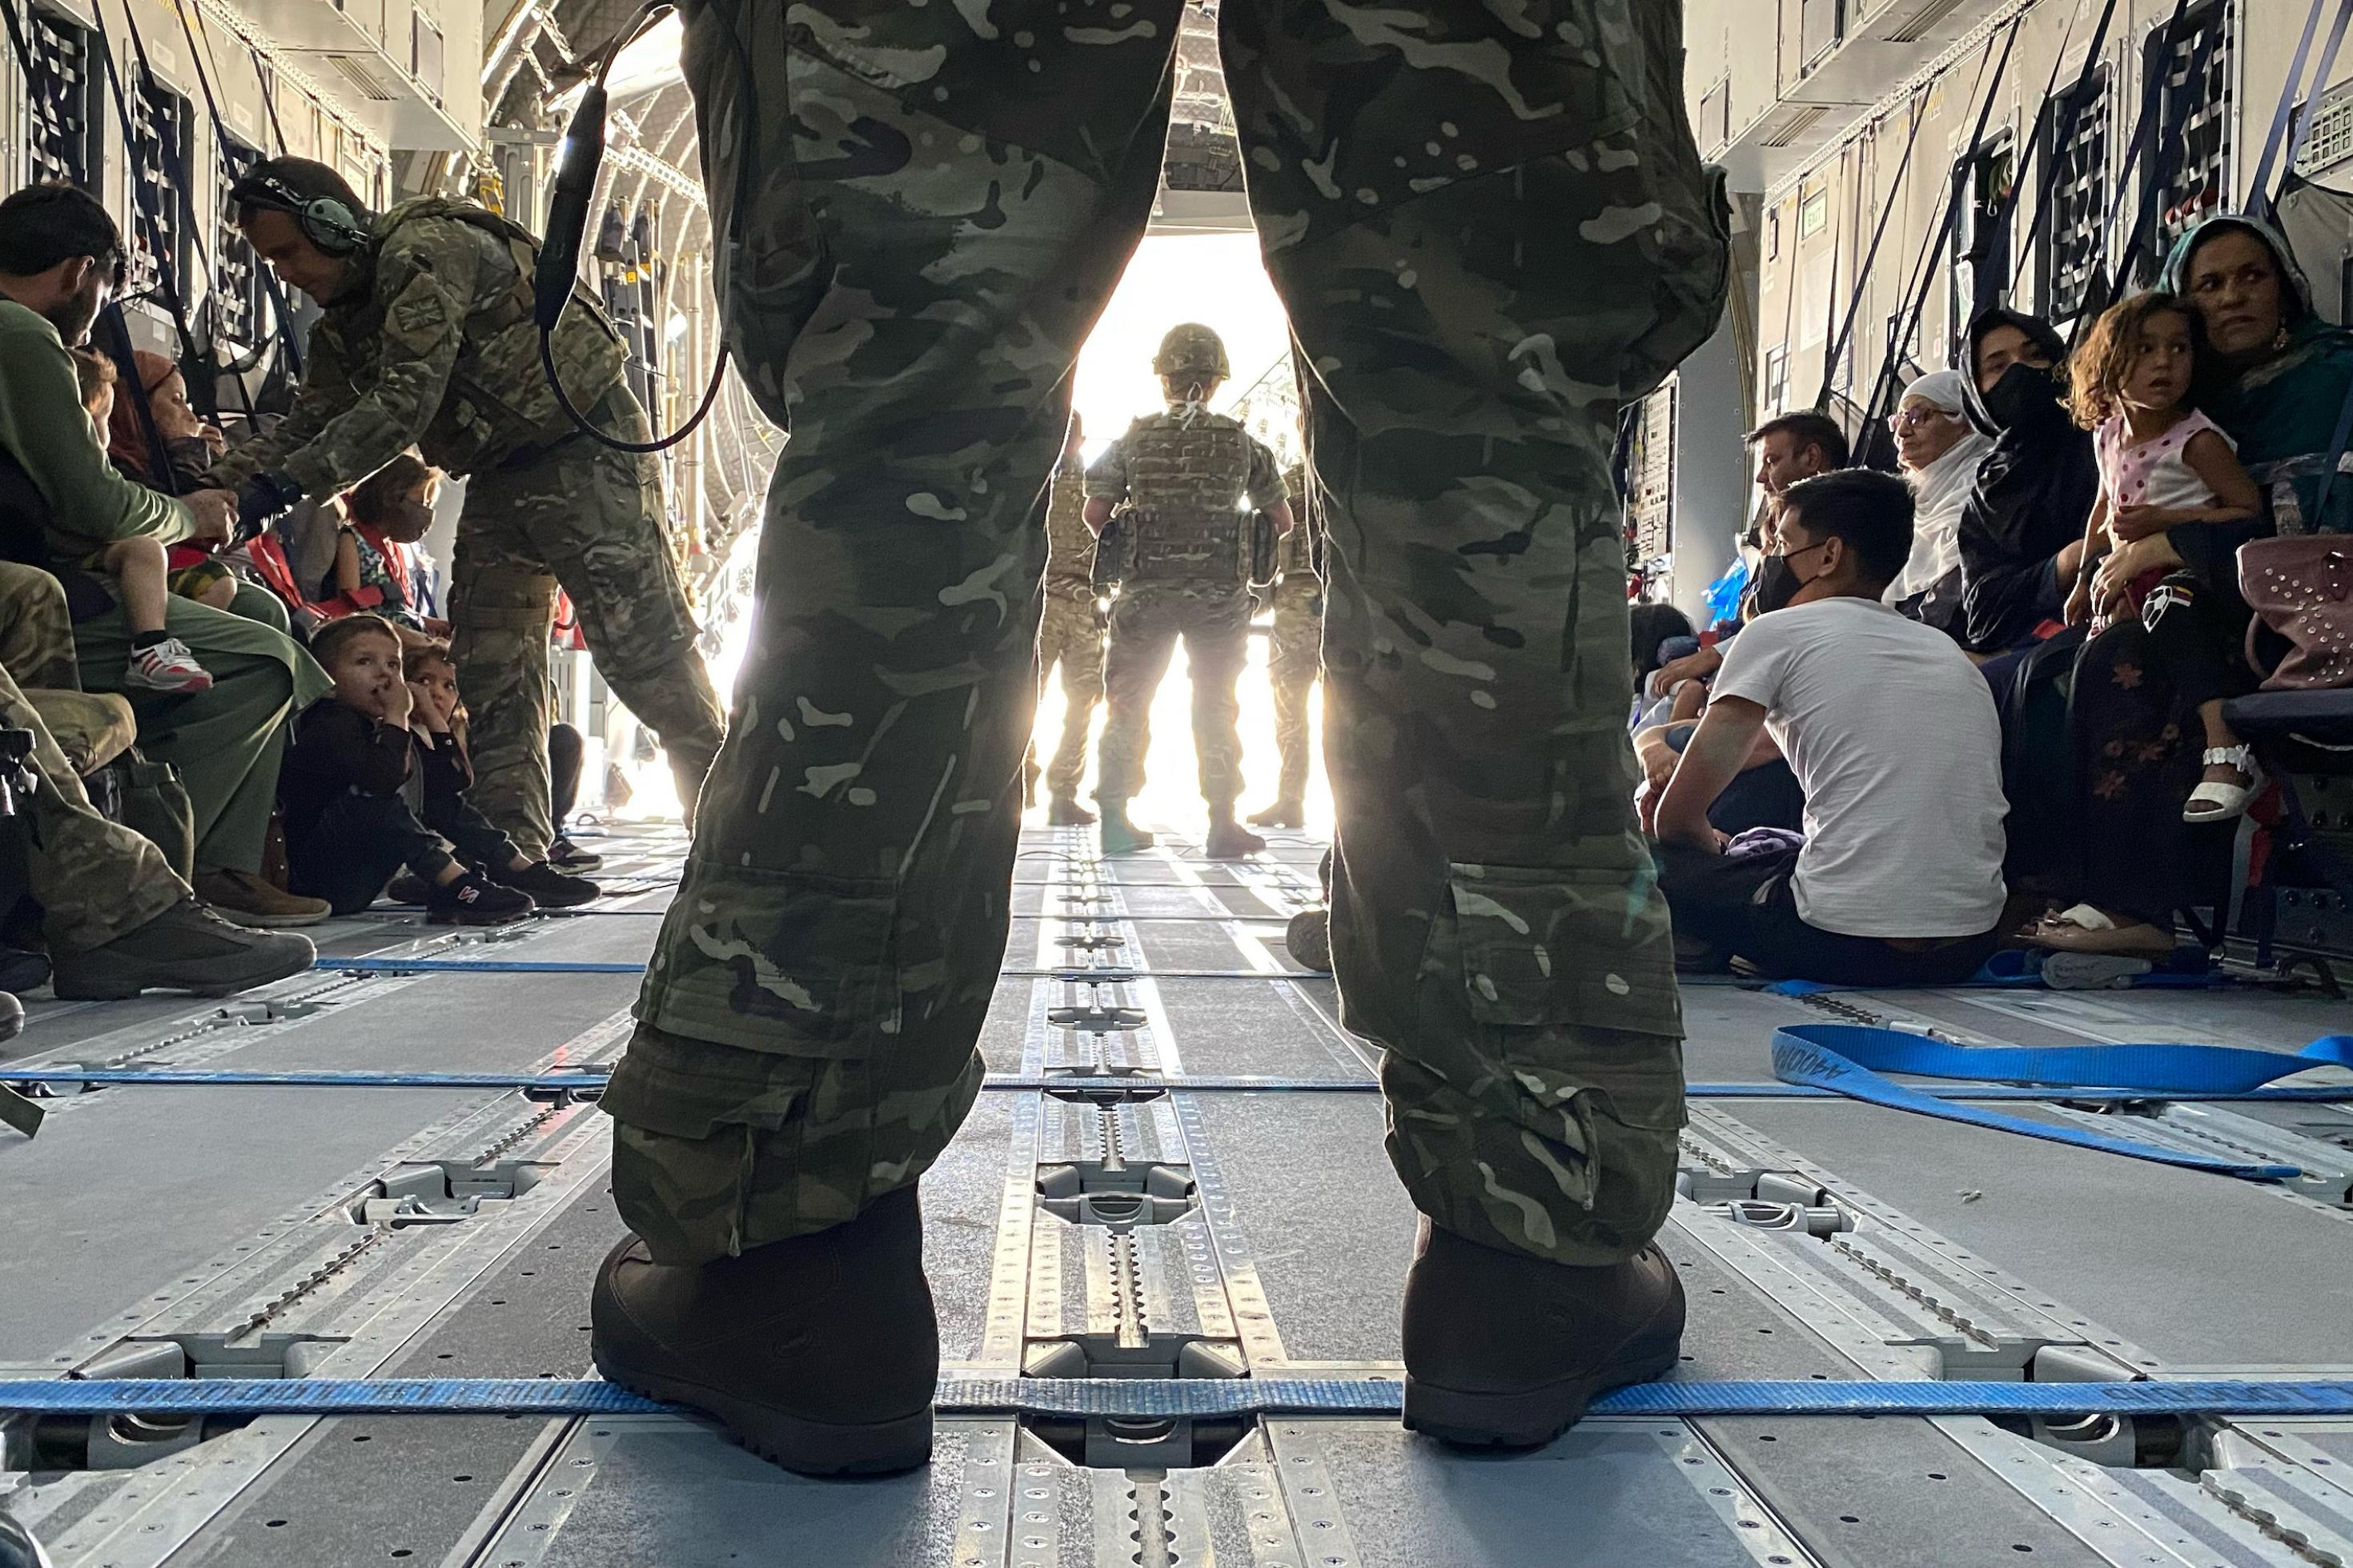 Blick in den Laderaum einer britischen Militärmaschine, im Vordergrund die Beine eines breitbeinig stehenden Soldaten in Tarnuniform. Im Hintergrund zivile Personen, die auf dem Boden des Flugzeuges sitzen.